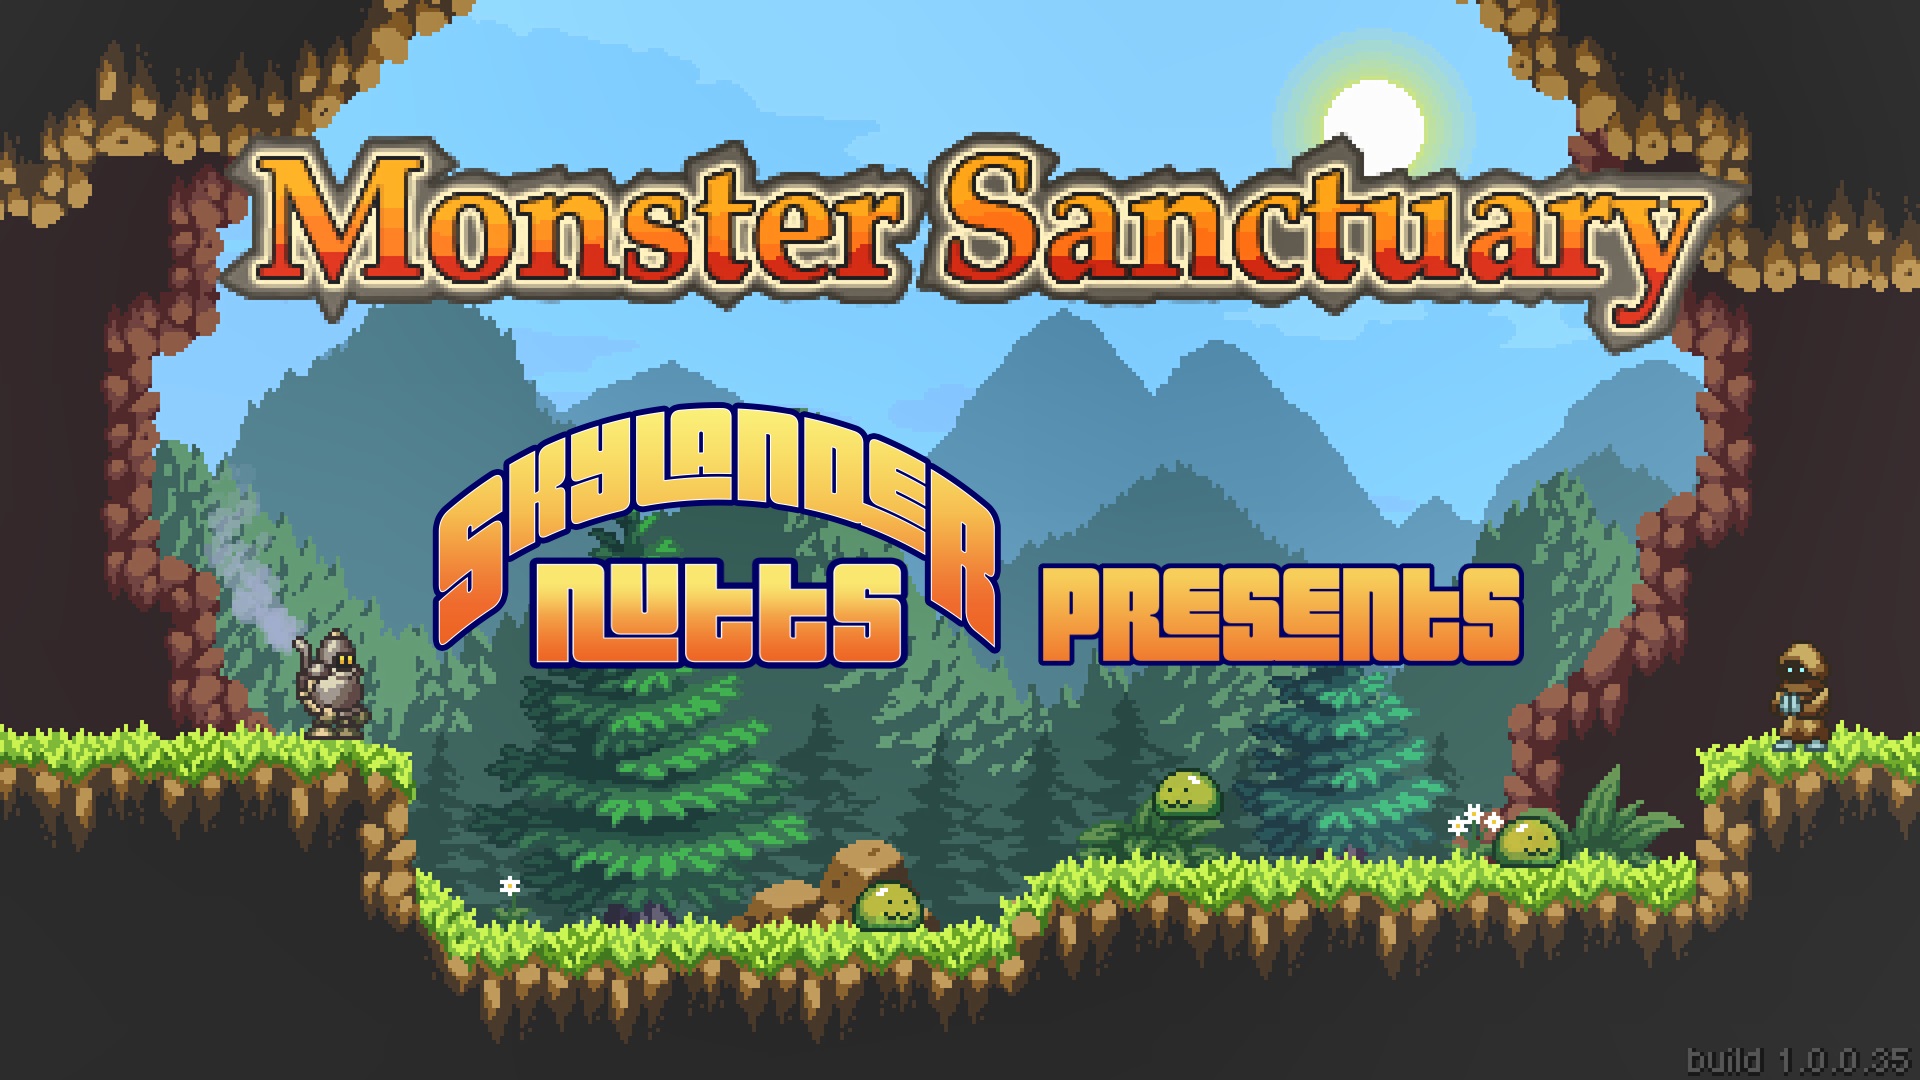 SkylanderNutts Presents Monster Sanctuary